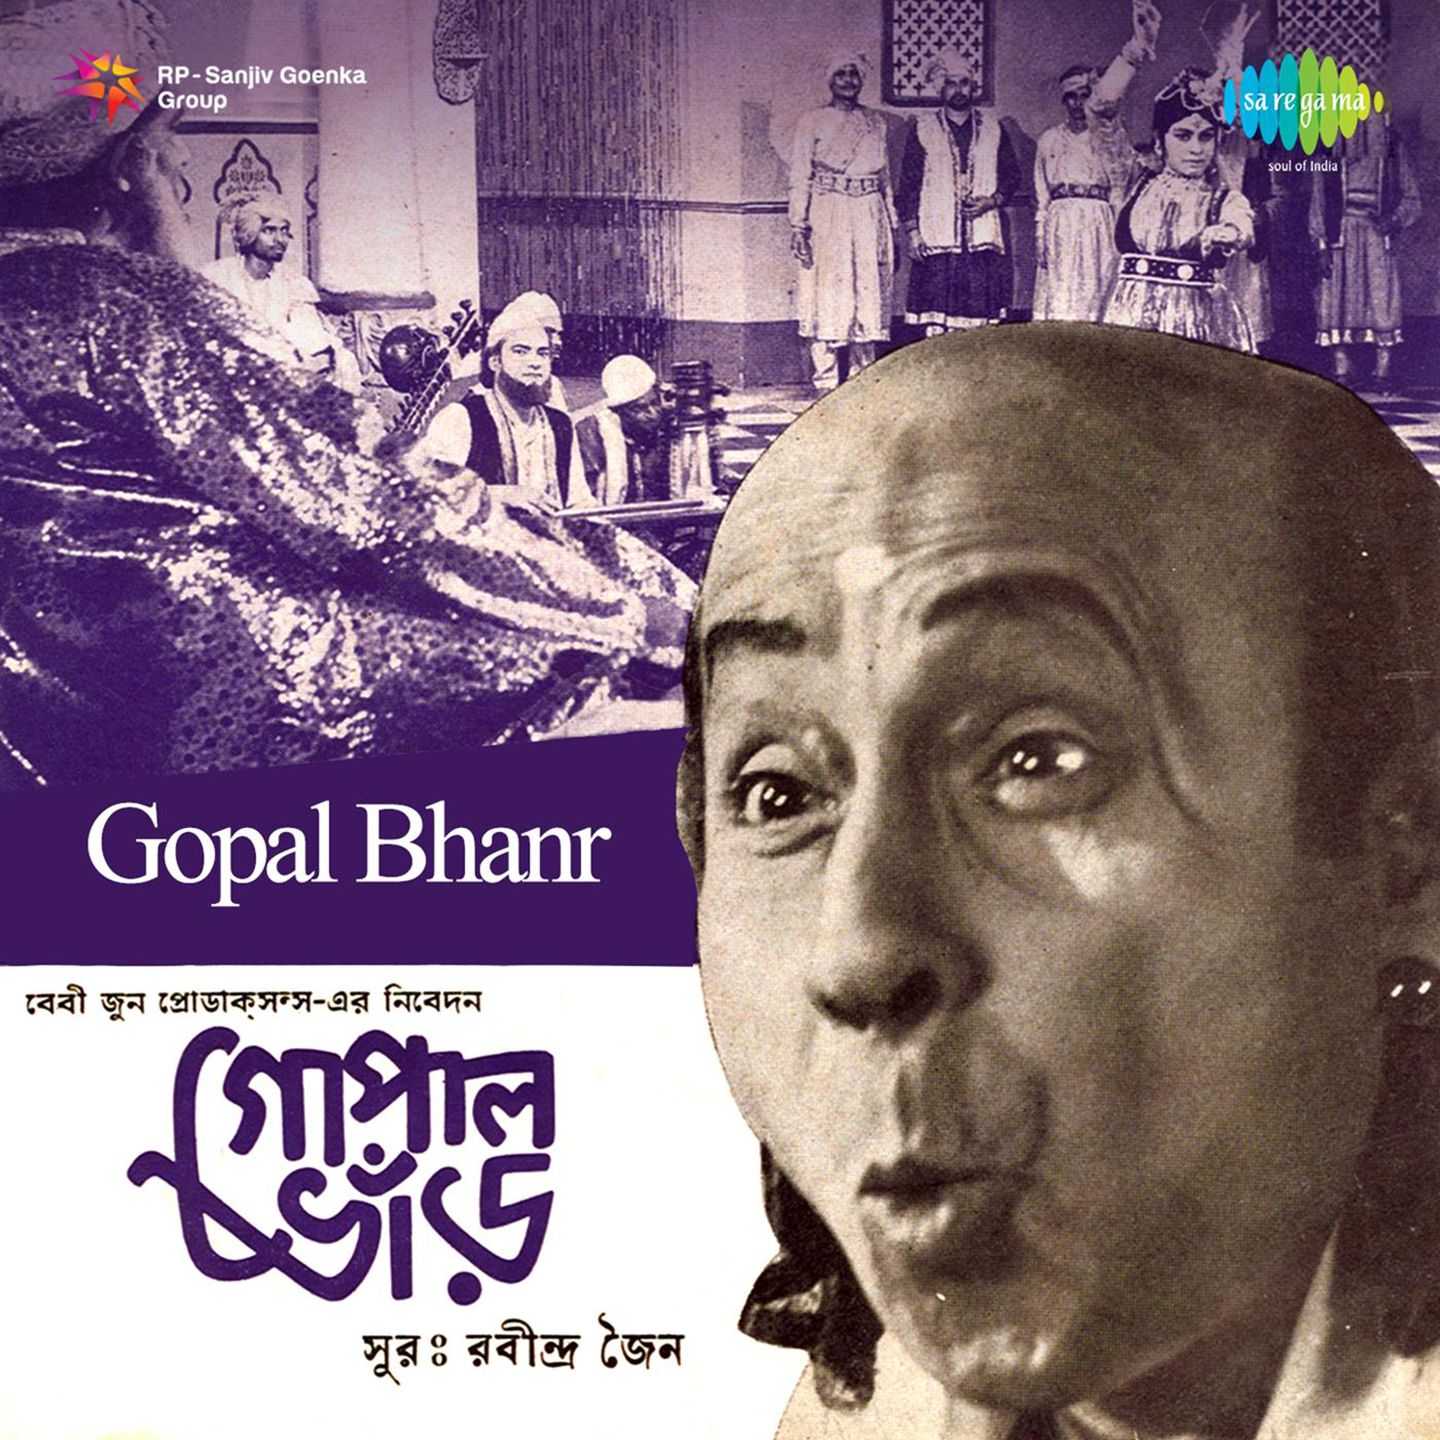 Gopal Bhanr